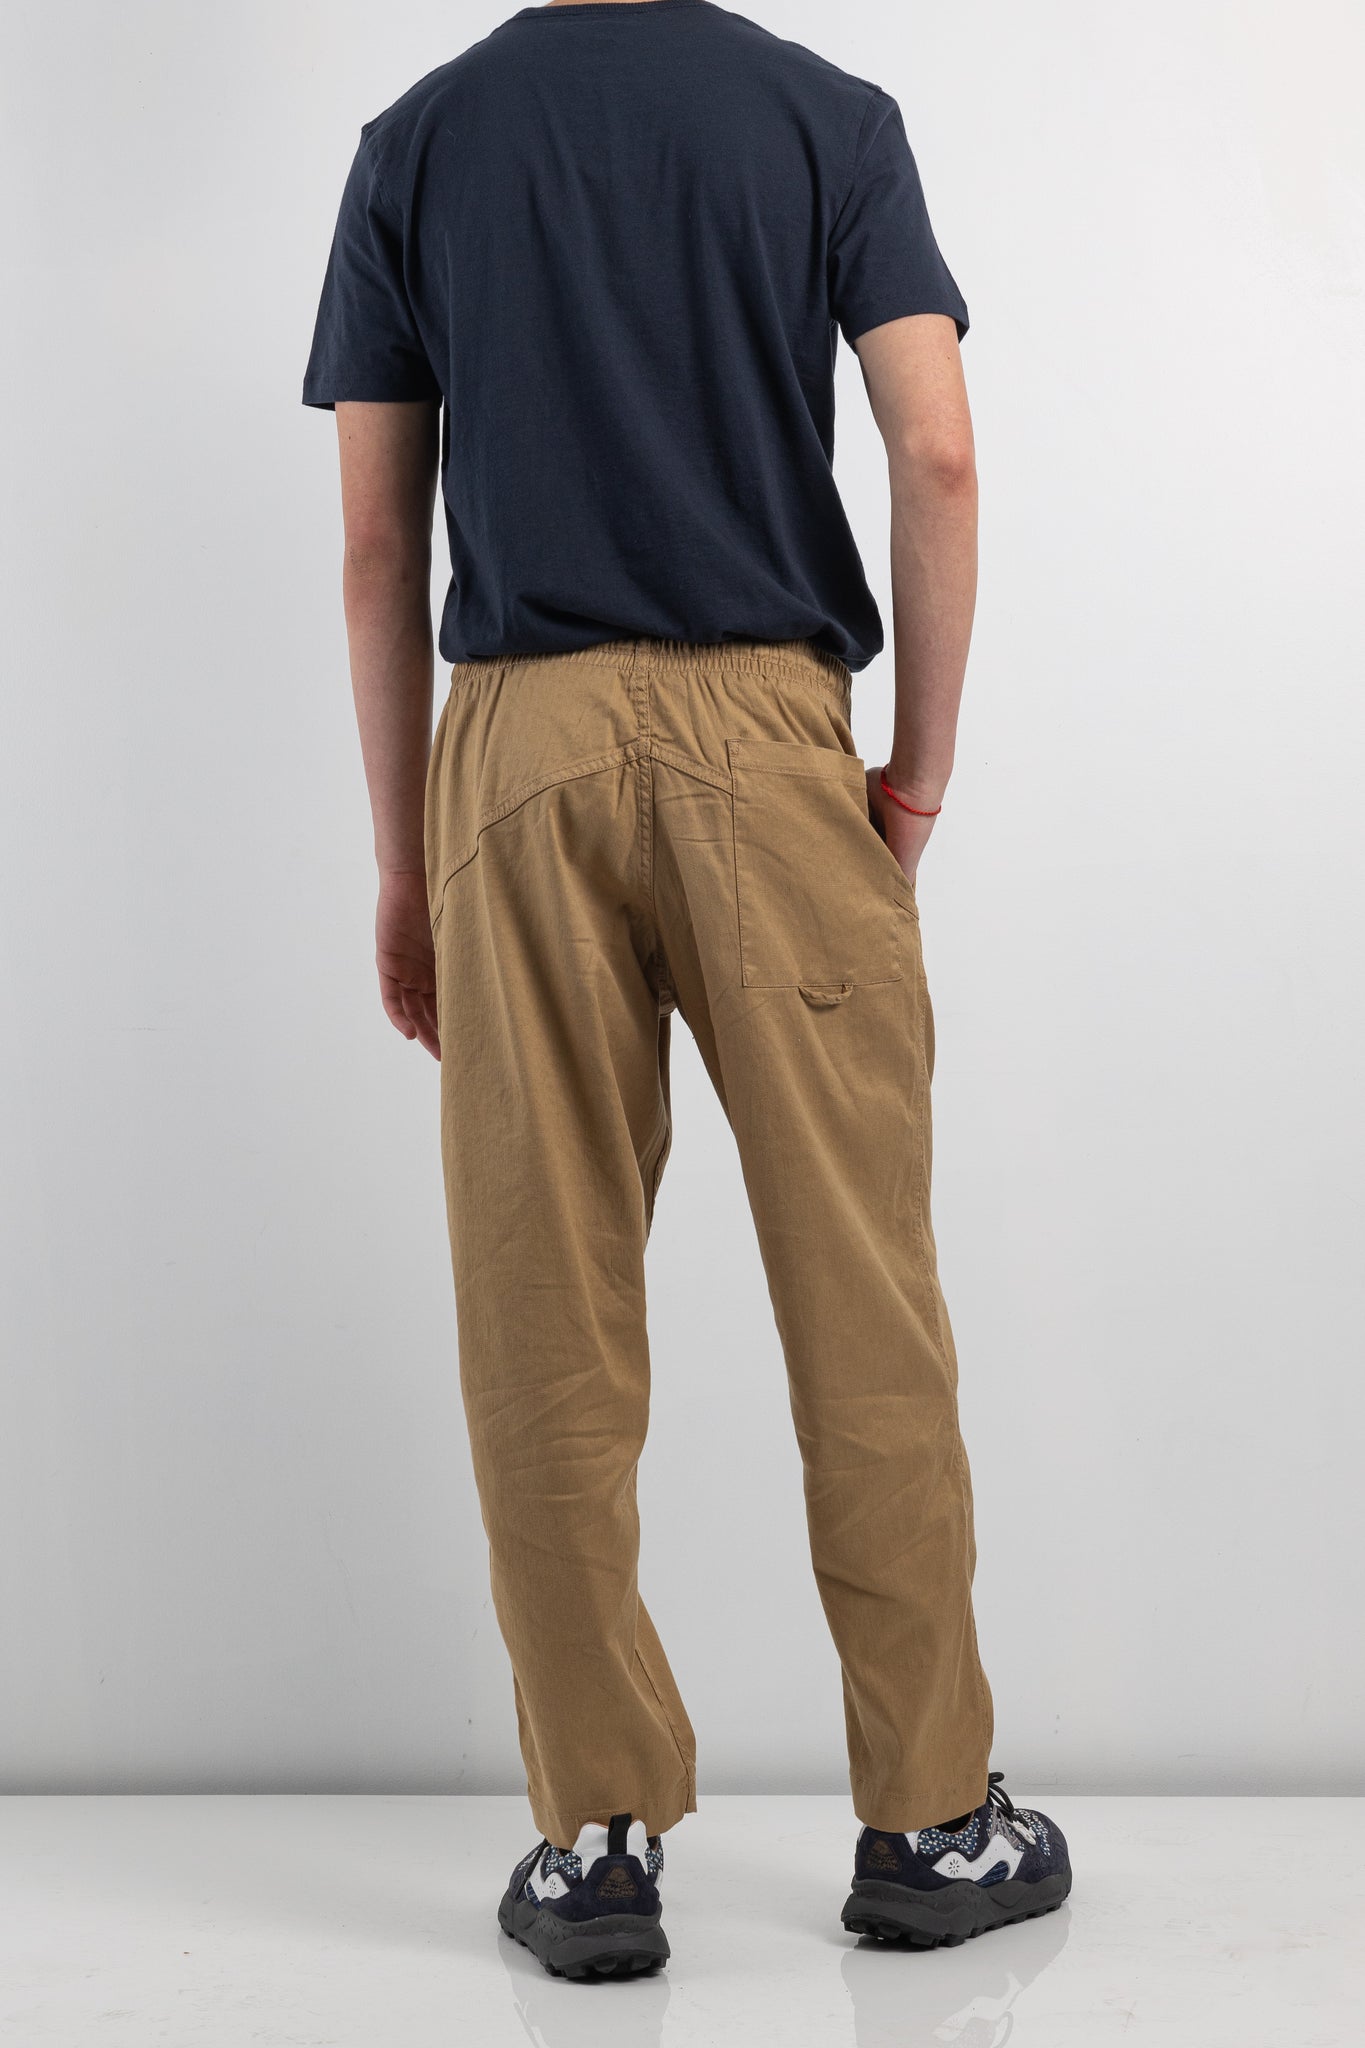 Mens Trouser | YMC alva skate trouser | The Standard Store